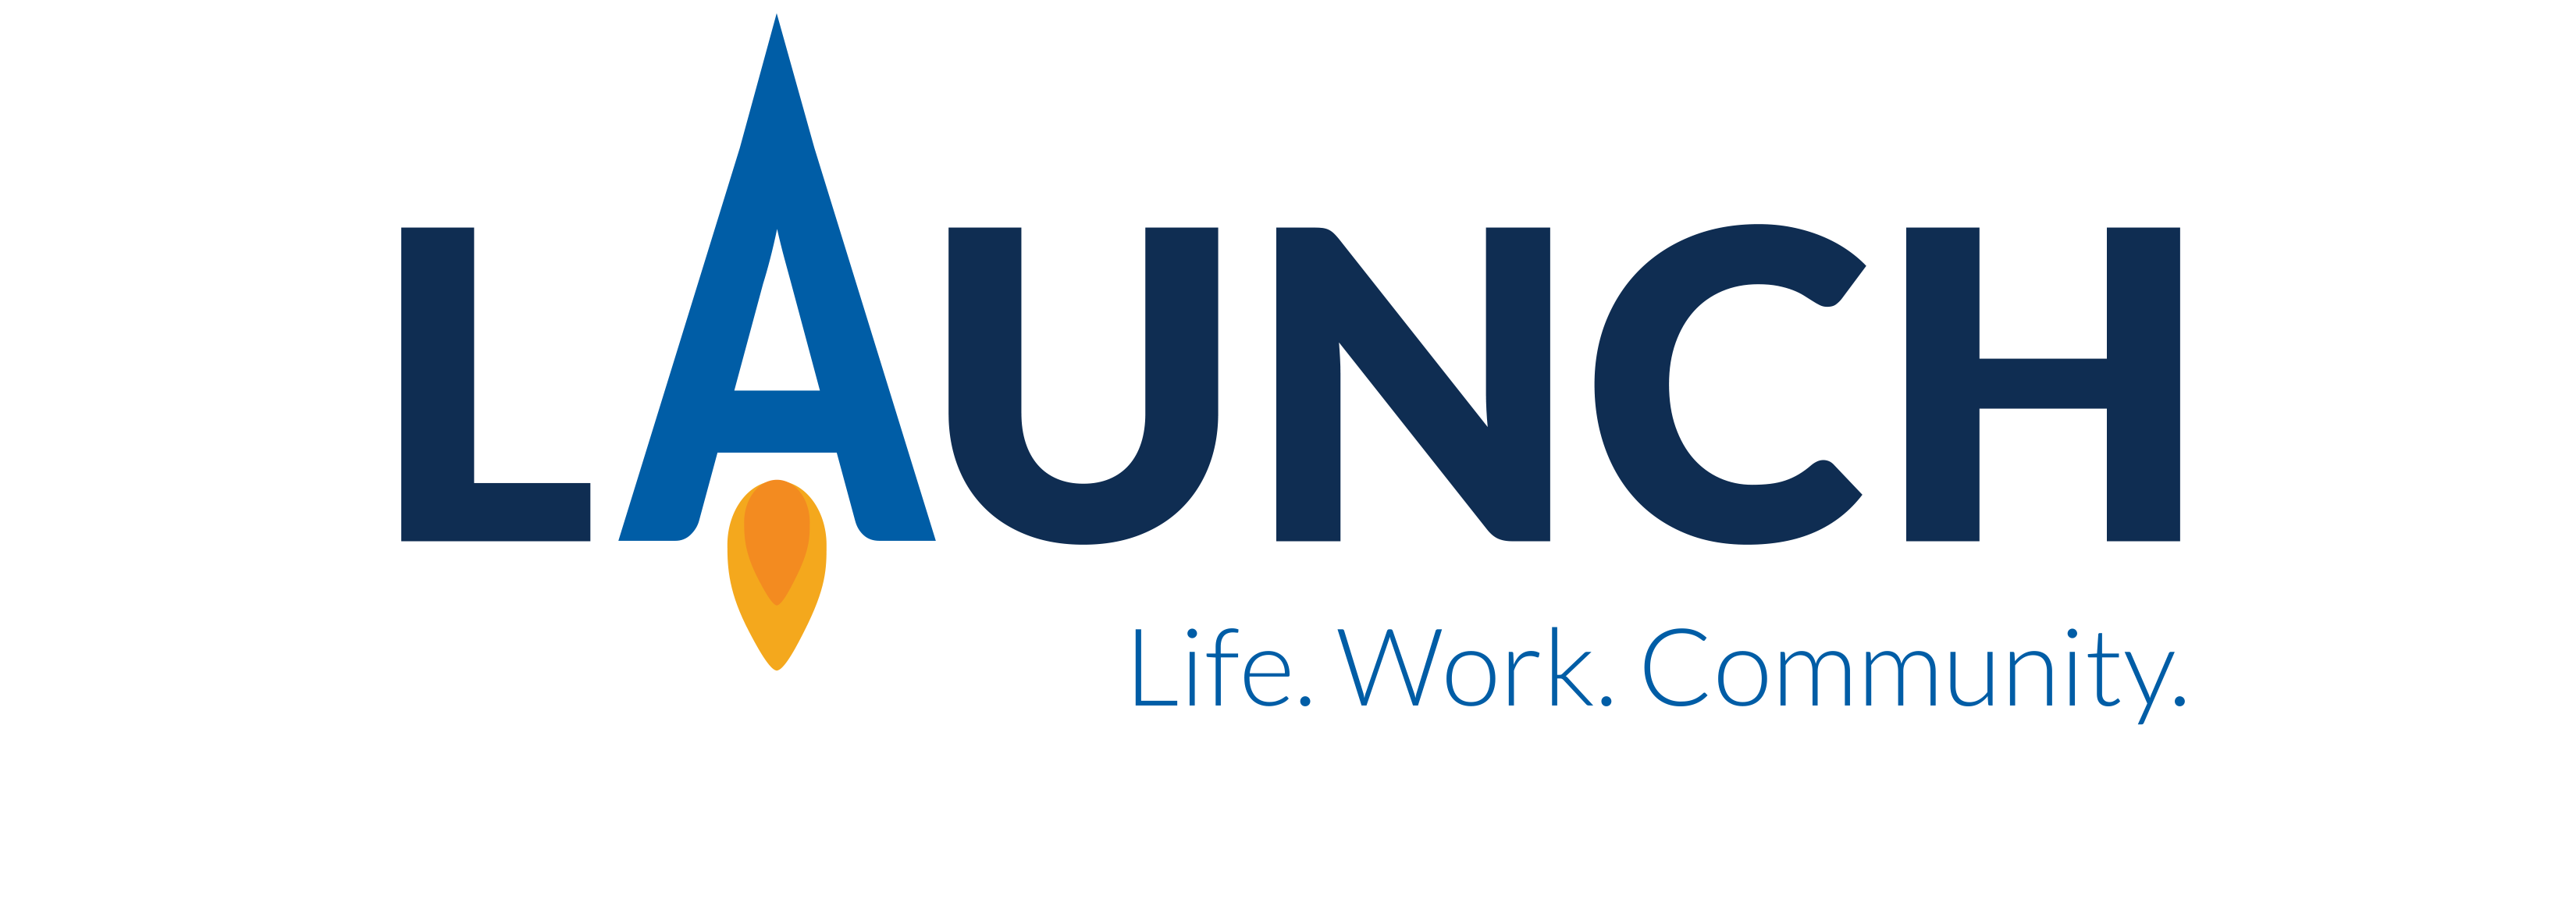 UVCC Launch Program Logo